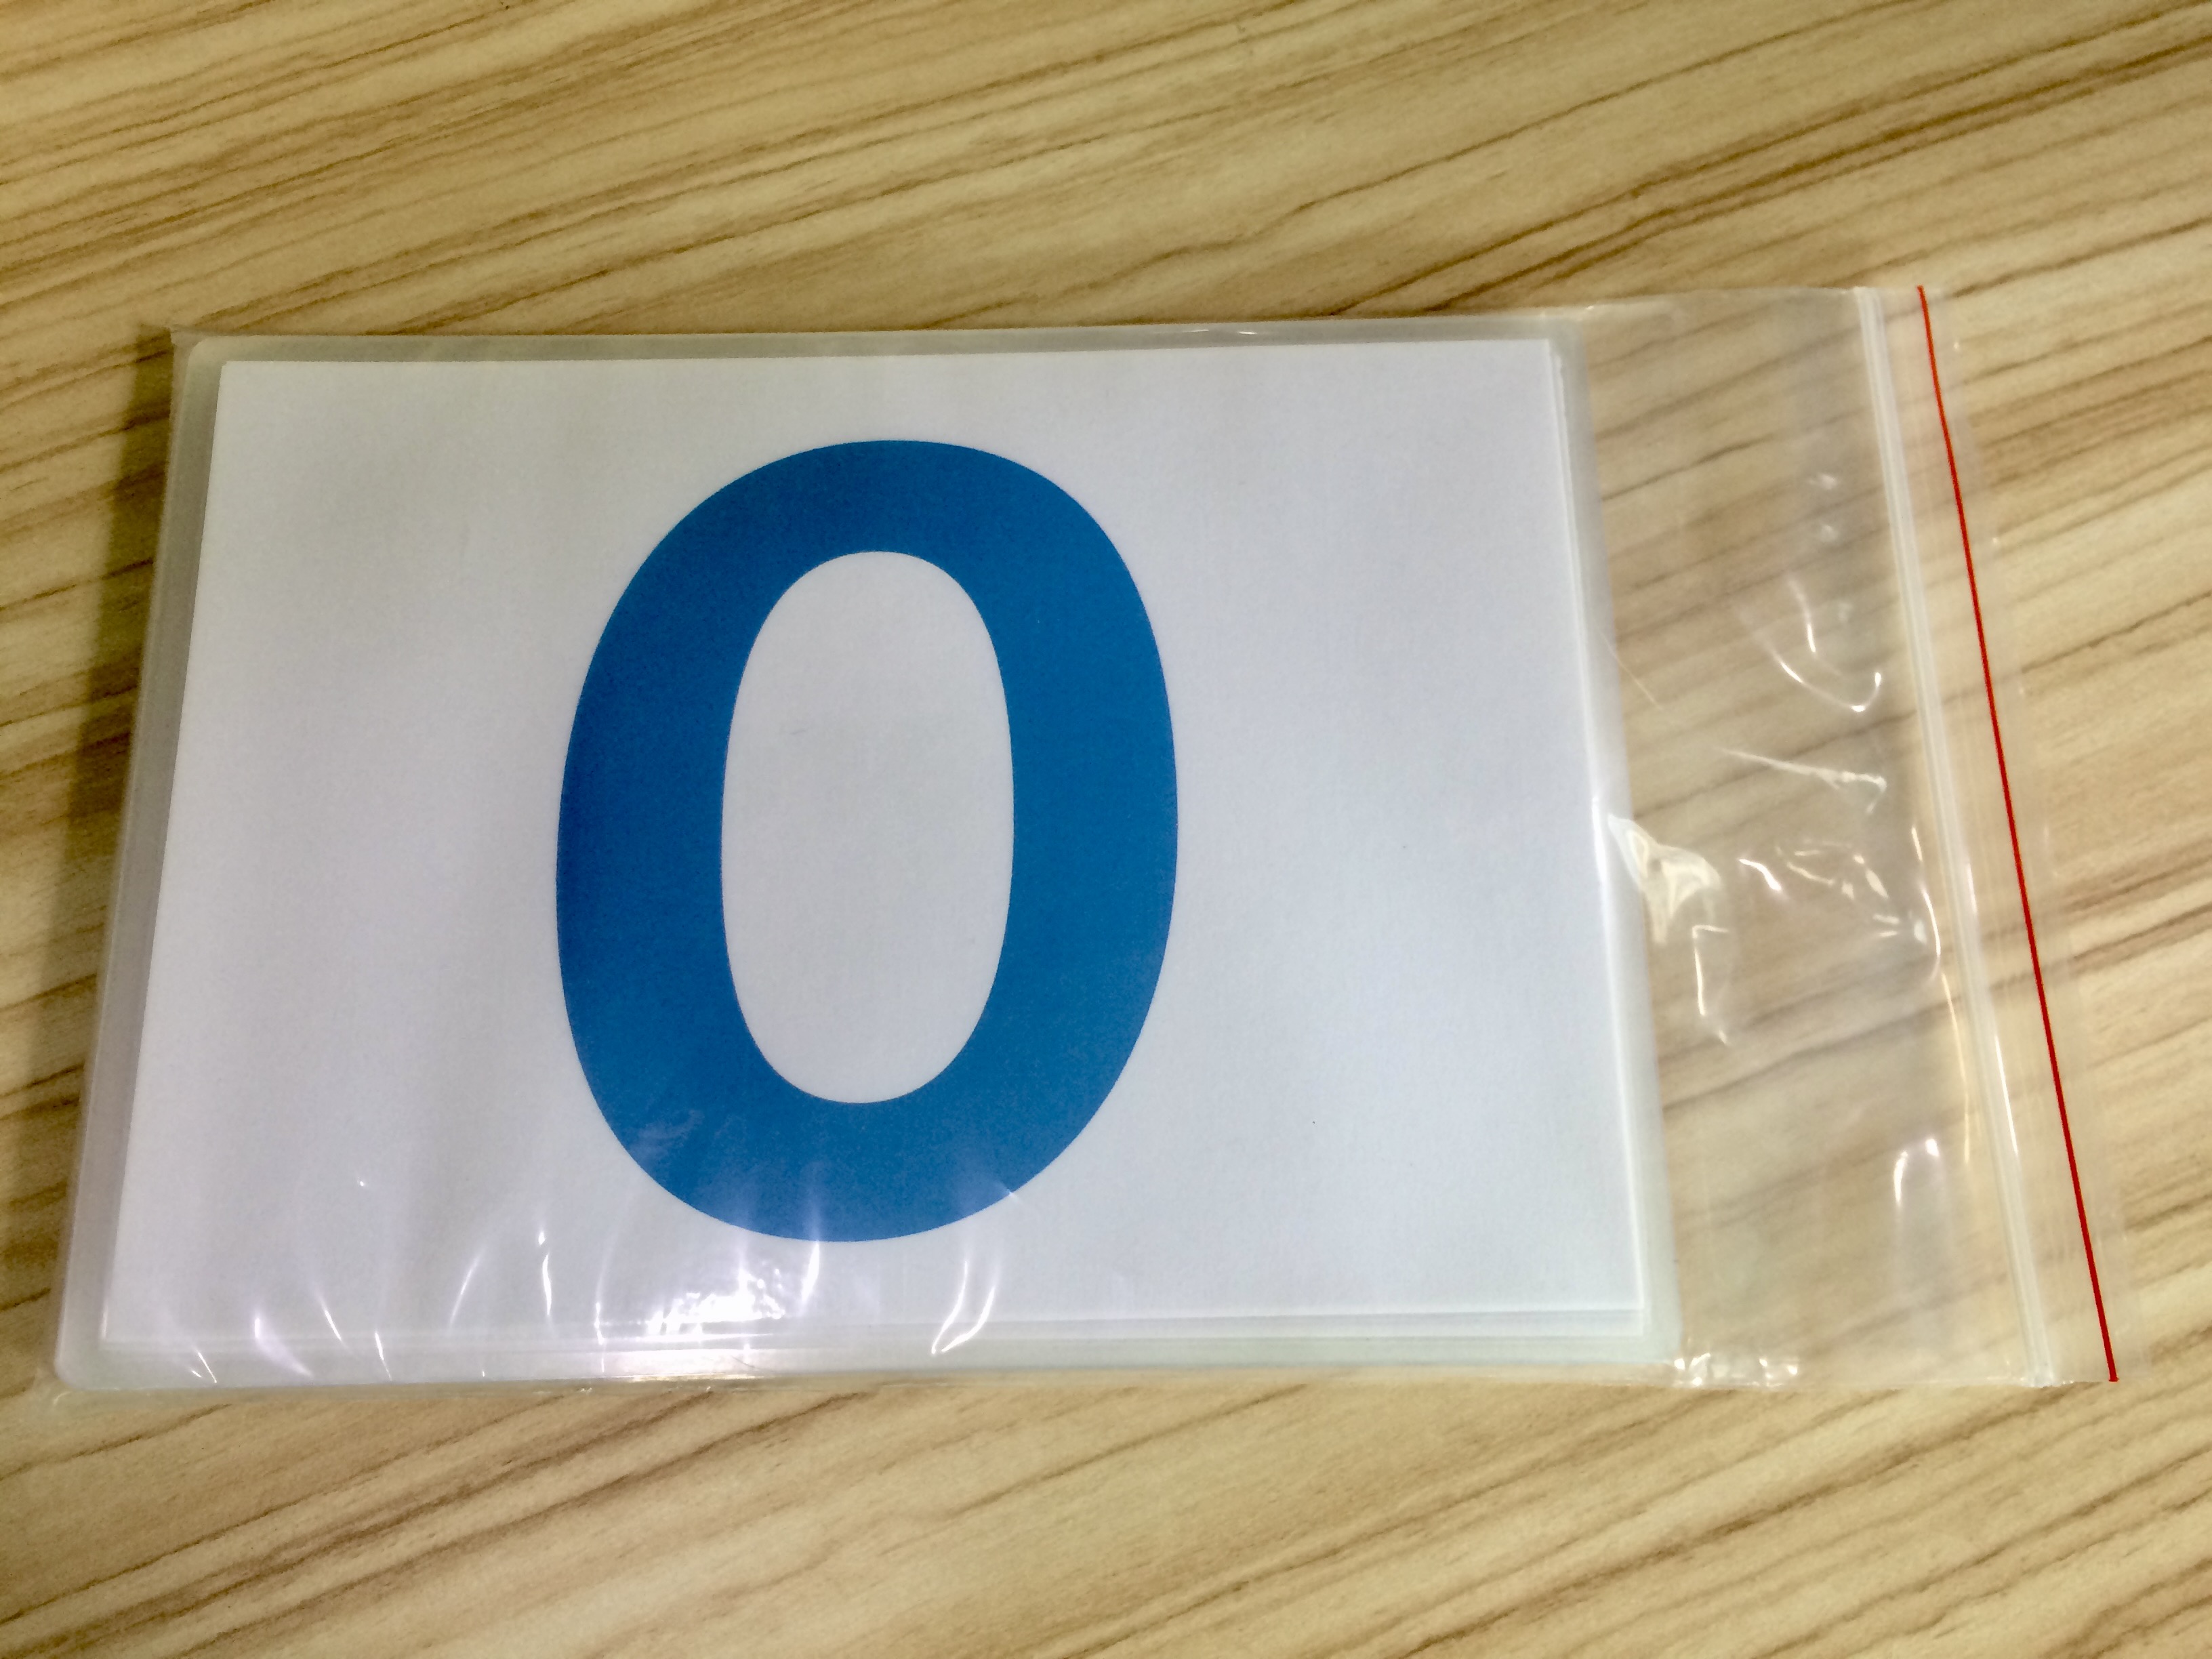 Ordinary number Flashcards - Thẻ học tiếng Anh chủ đề số đếm thông thường - 21 cards: from 0 to 20